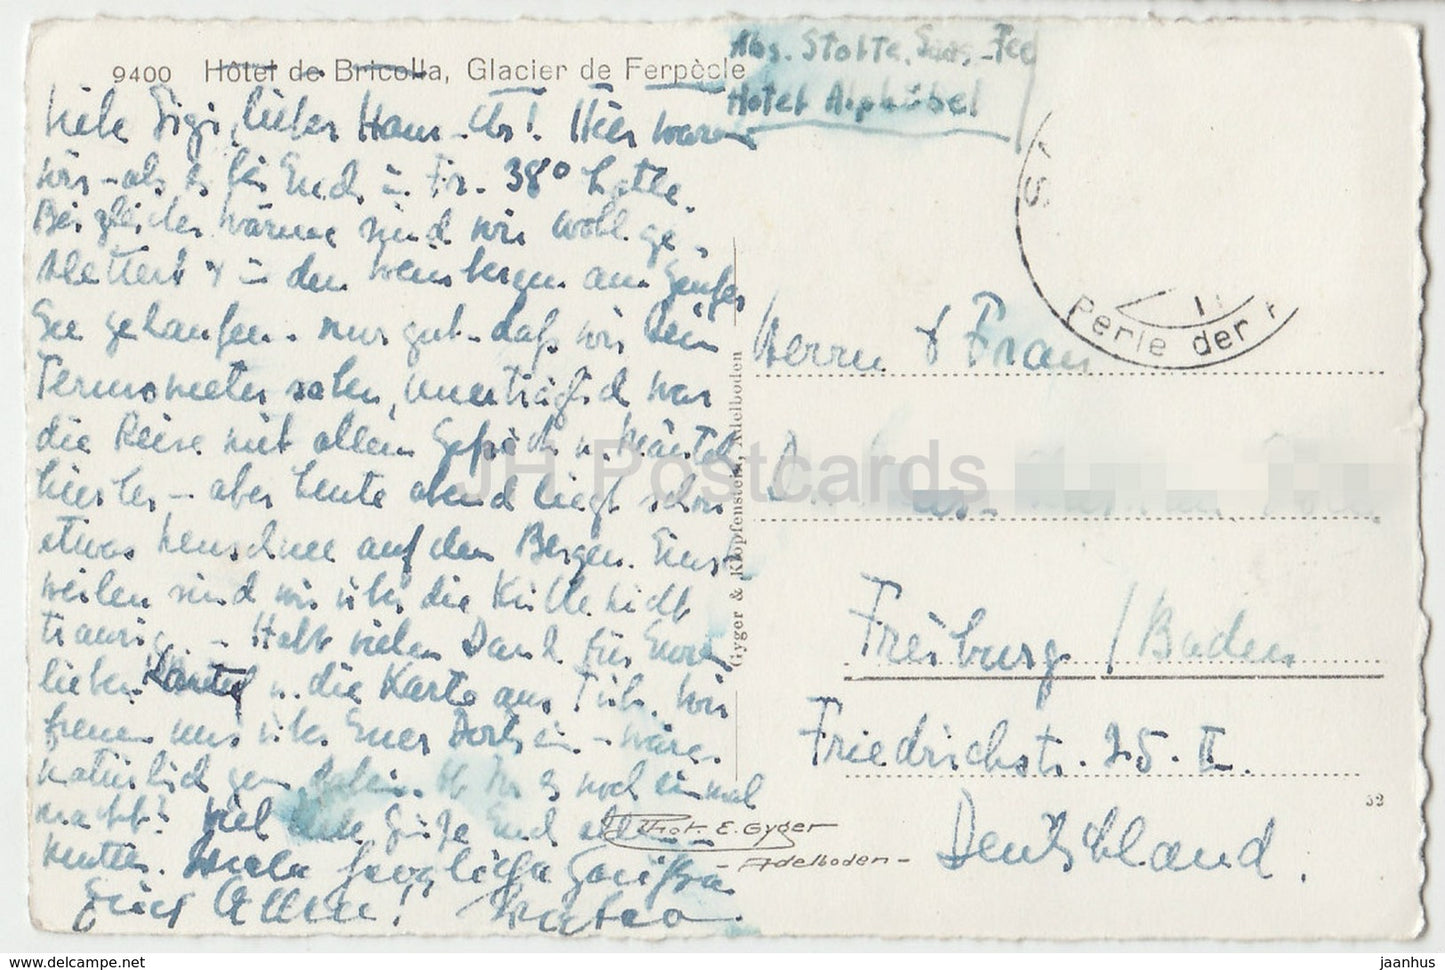 Hôtel de Bricolla - Glacier de Ferpecle - 9400 - Suisse - carte postale ancienne - carte postale ancienne - occasion